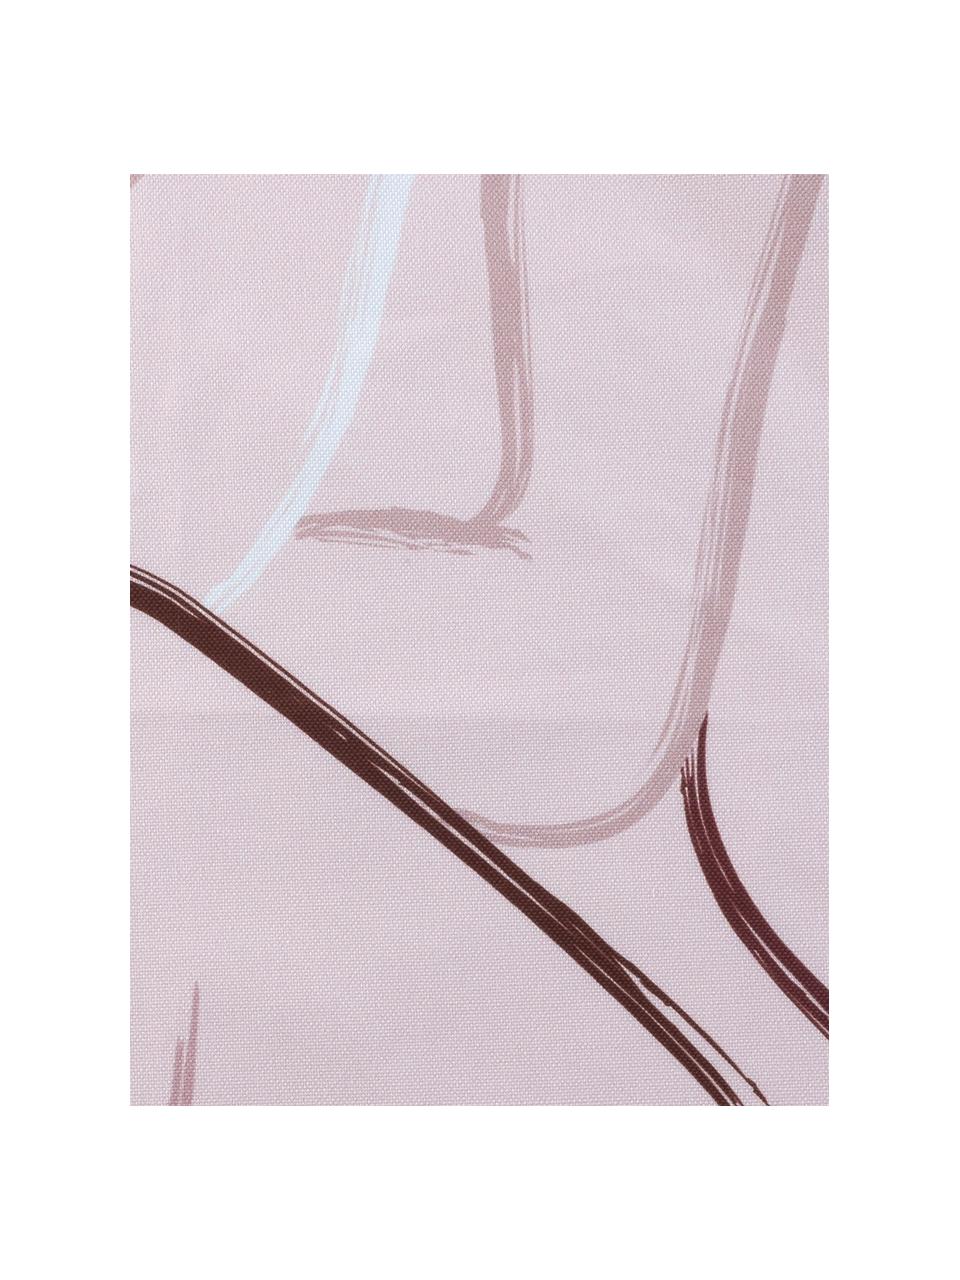 Kussenhoes Curves met getekende opdruk, 100% katoen, Roze, wit, 40 x 40 cm